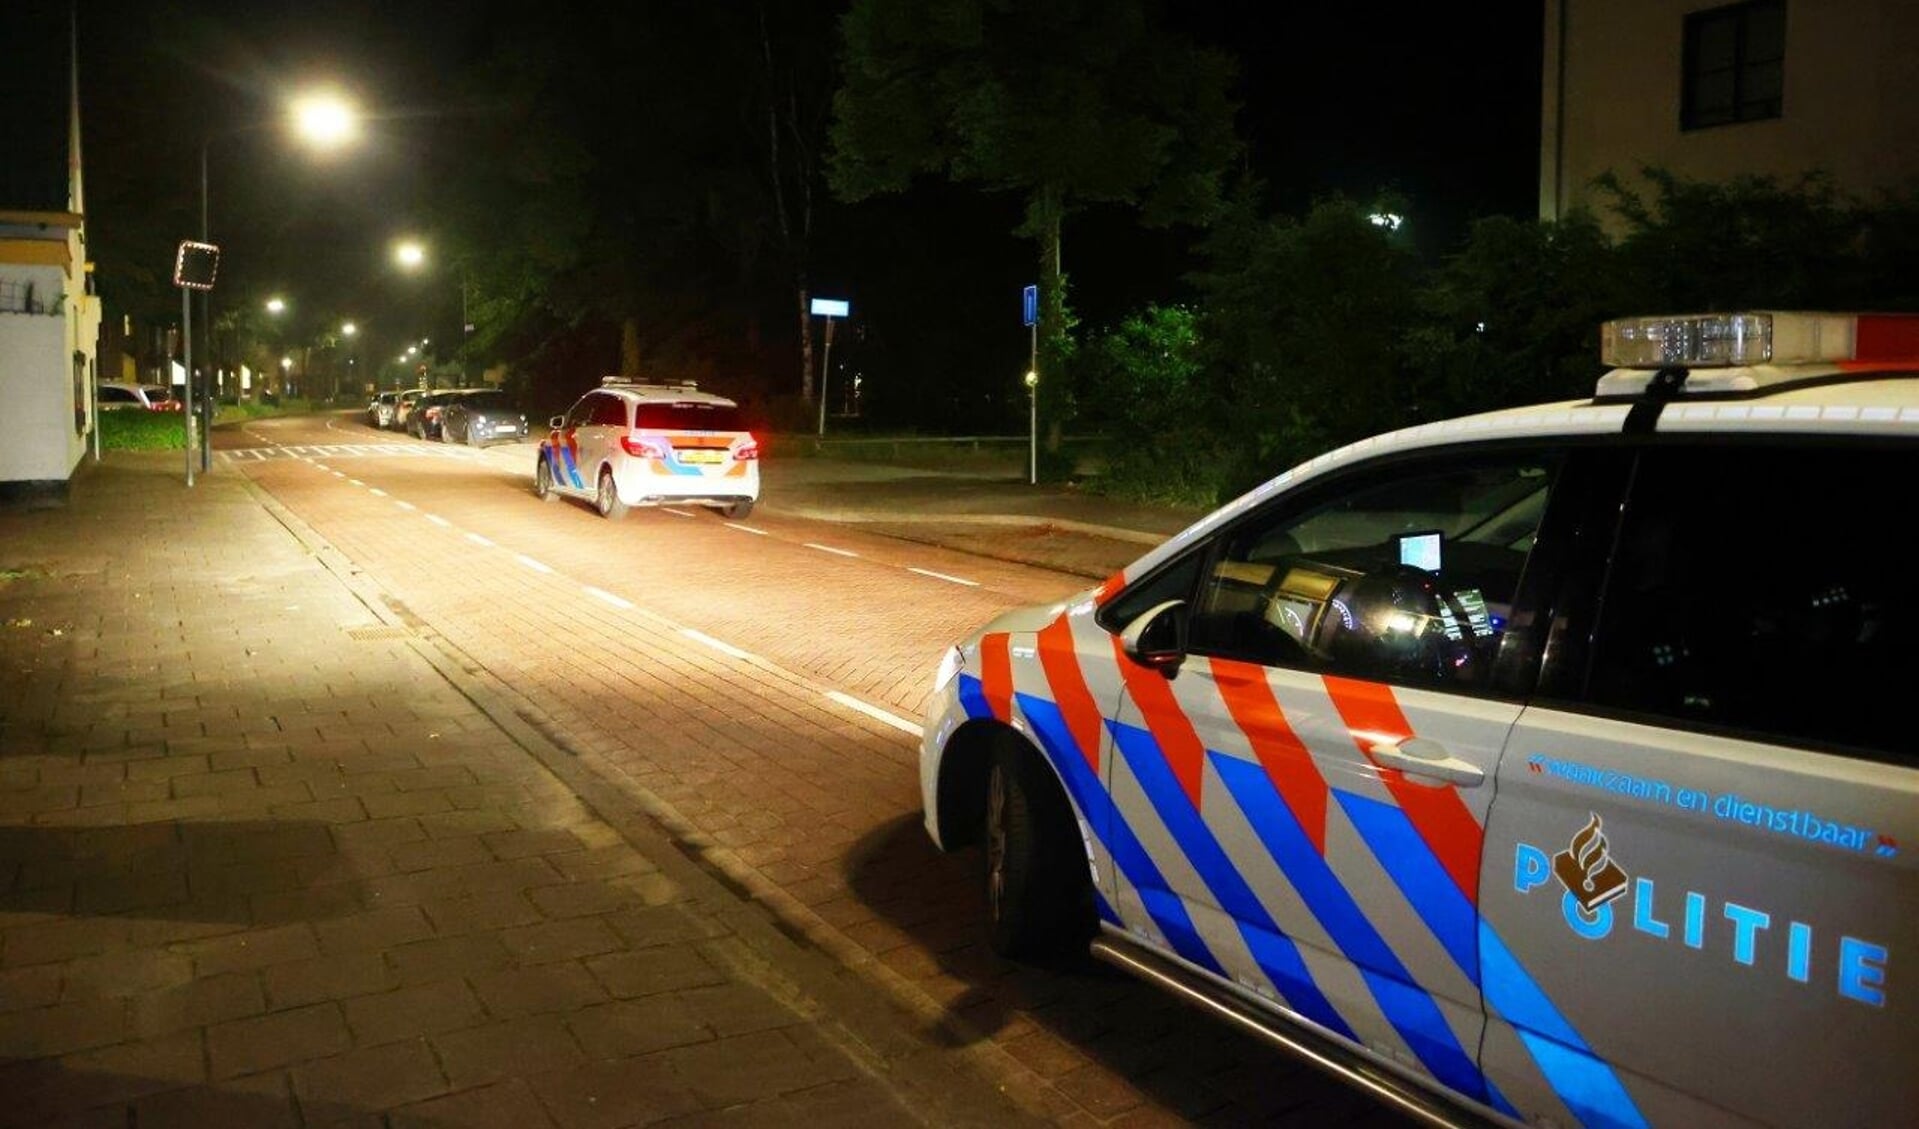 De politie is op zoek naar mogelijke getuigen van een vrijheidsberoving die gisteren (donderdag 19 mei) plaatsvond op de Vlasmeersestraat in Vught. 